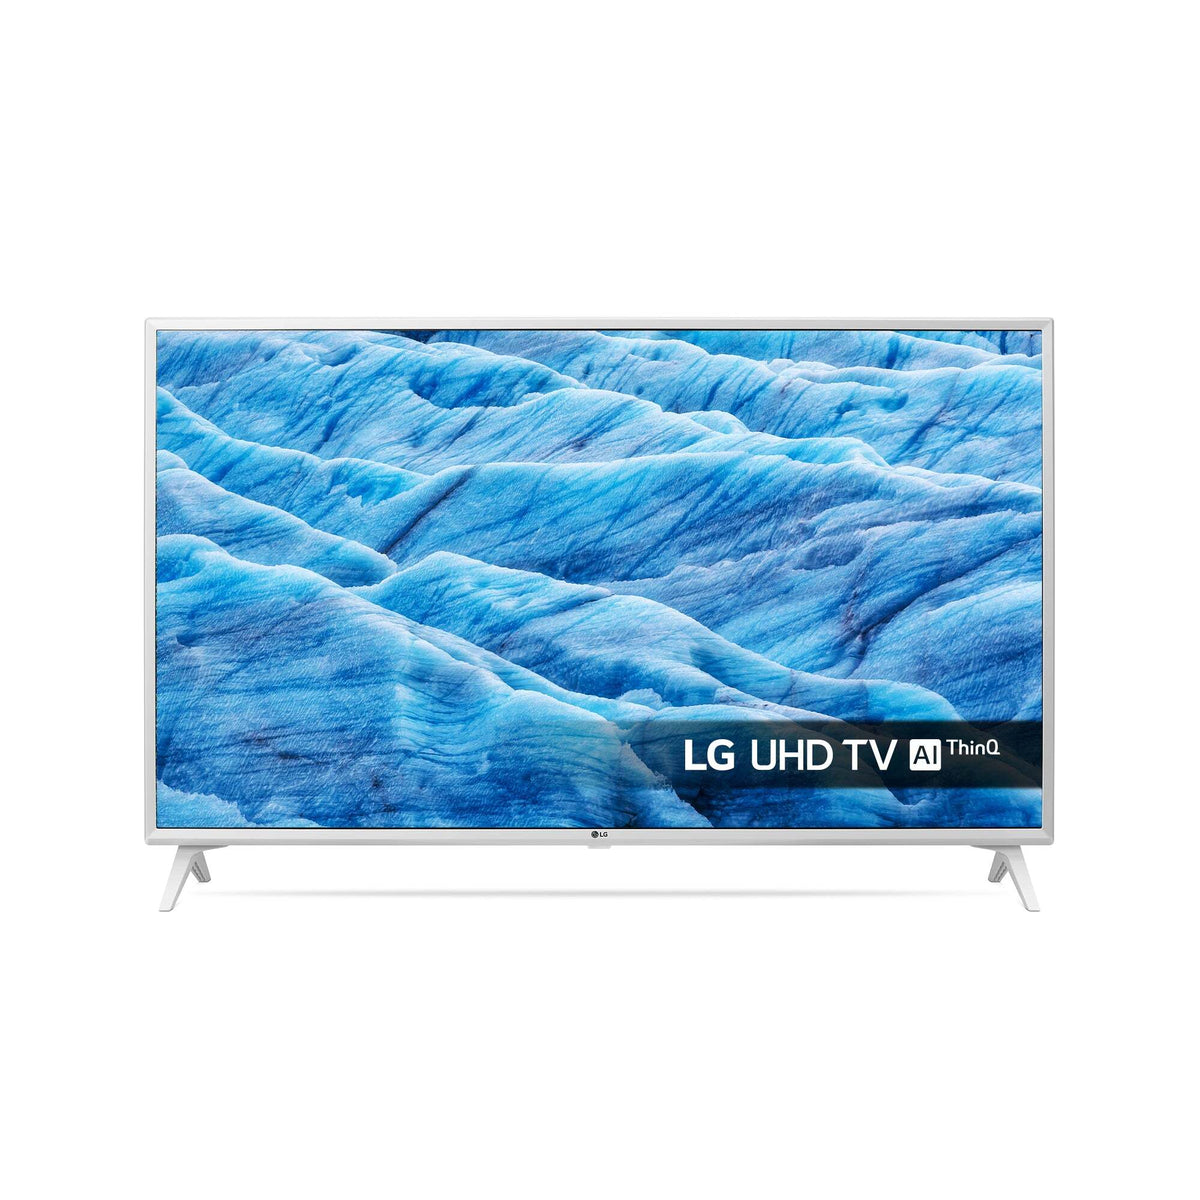 Smart televízor LG 49UM7390 (2019) / 49" (123 cm)